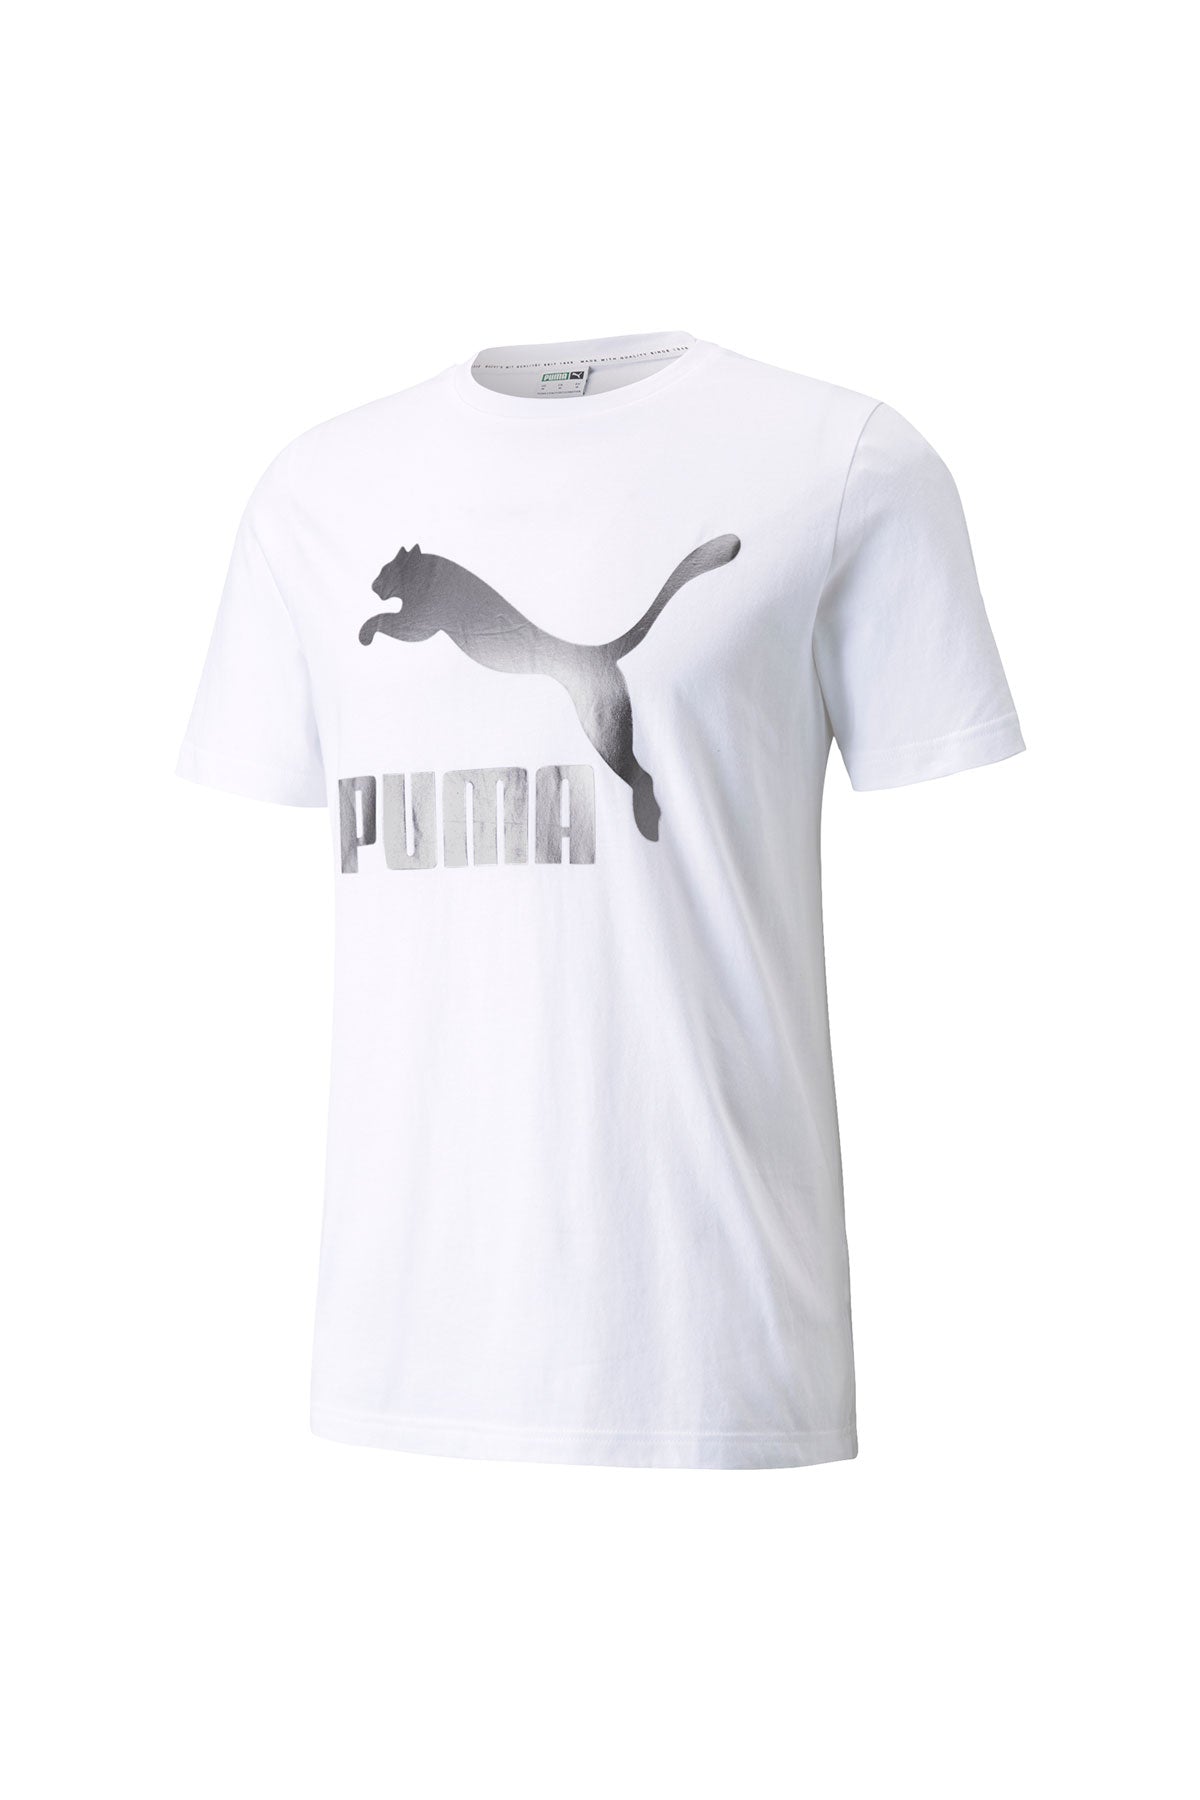 Classics Logo Tee Puma White-Matte